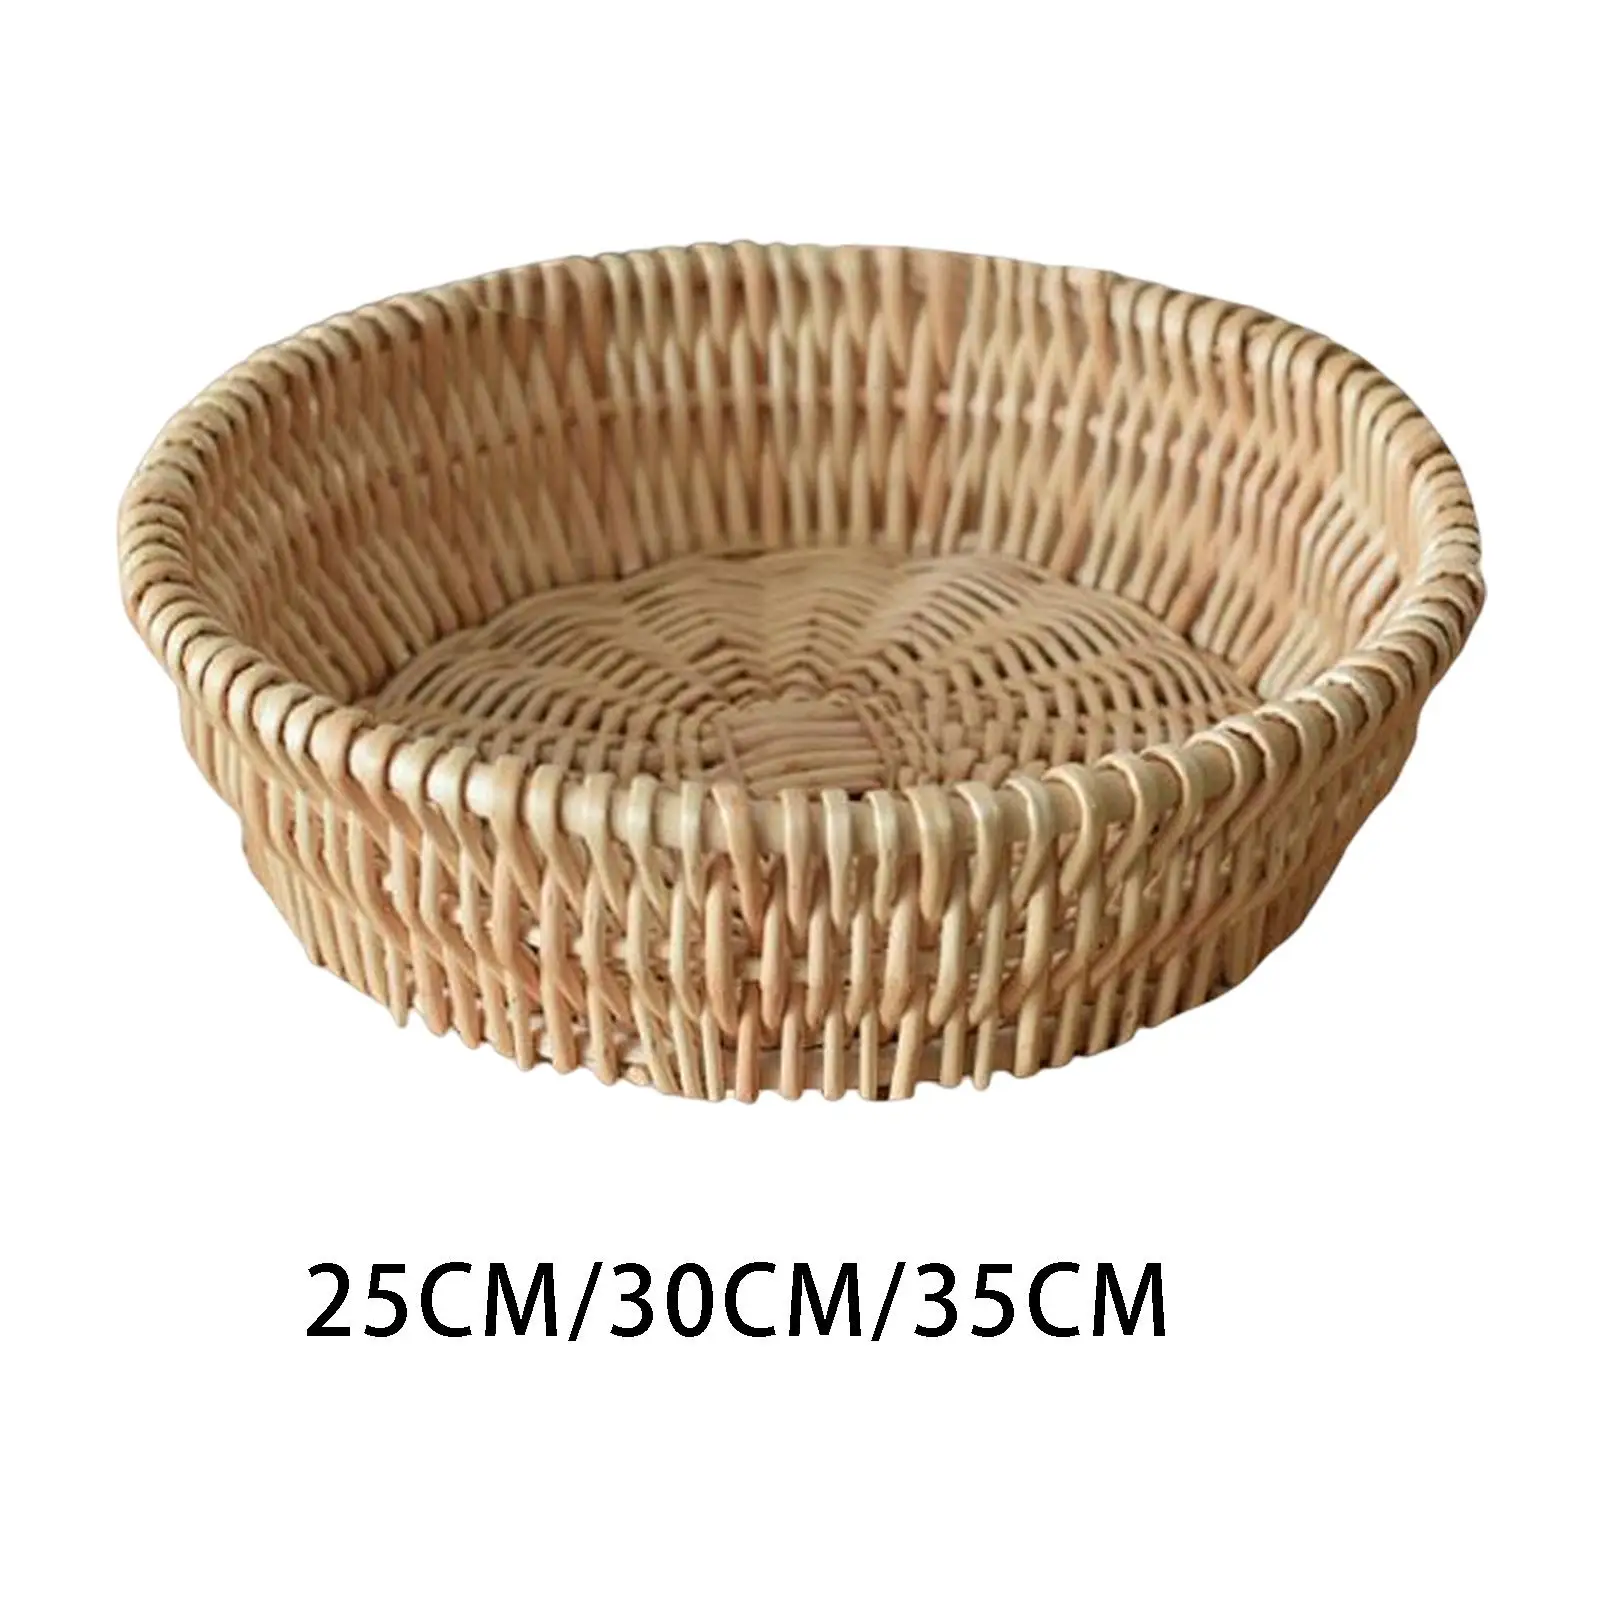 Hand Woven Fruit Storage Basket Wicker Bread Basket Container Bread Basket Vegetable Basket for Kitchen Hotel Shelf Decoration